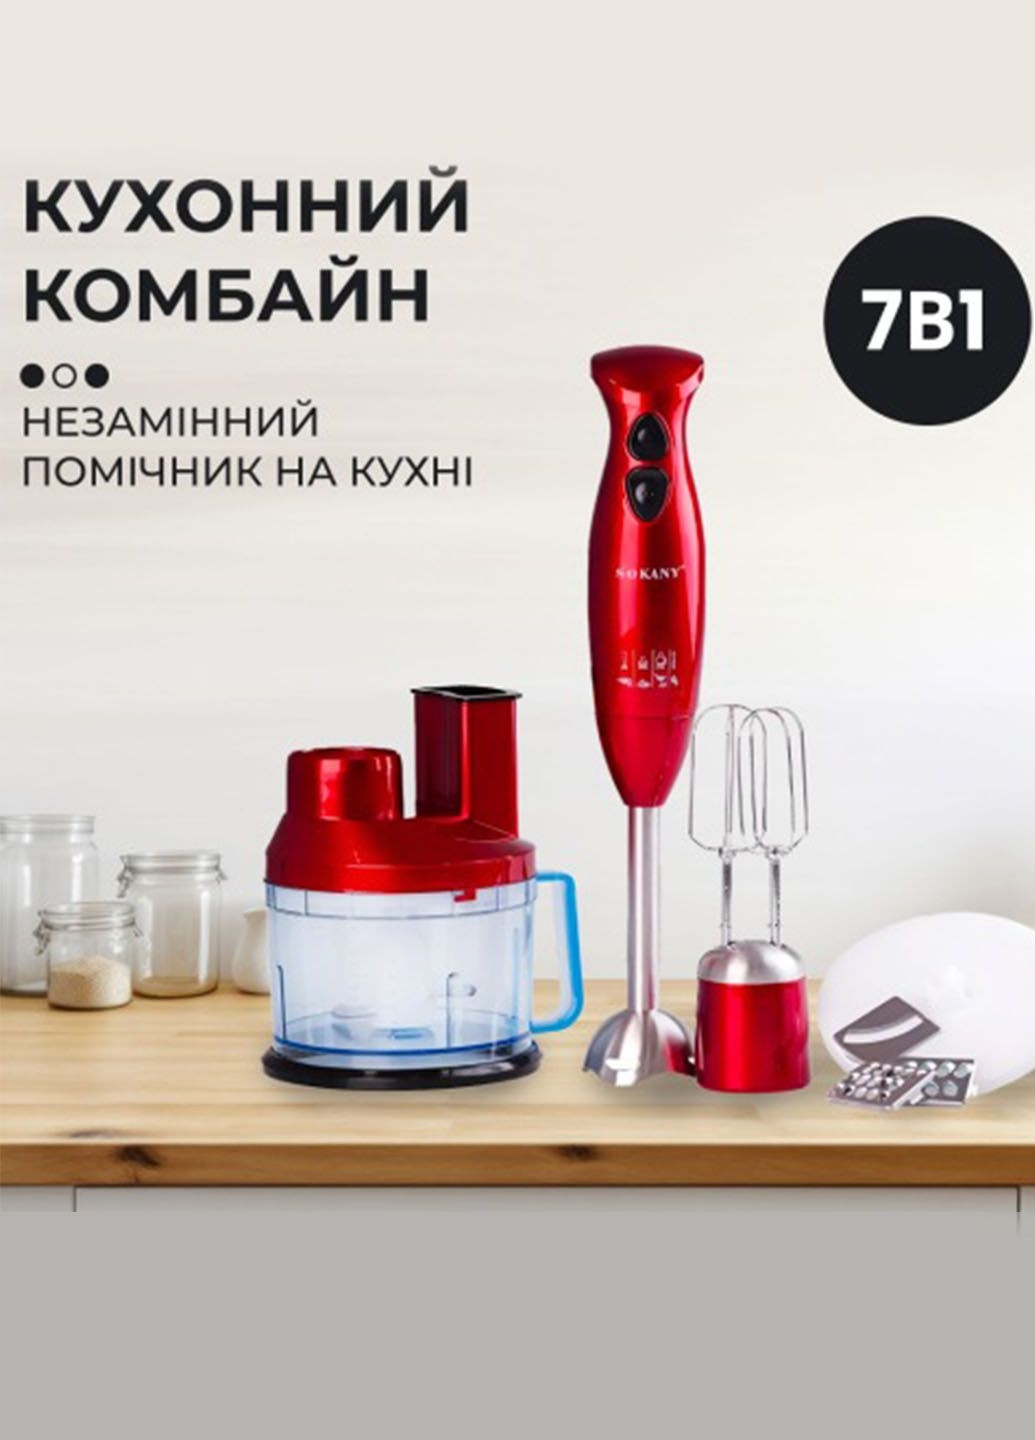 Многофункциональный кухонный комбайн бесшумный из нержавеющей стали 0,7 л 700 Вт Sokany sm-5011-7 (282841481)